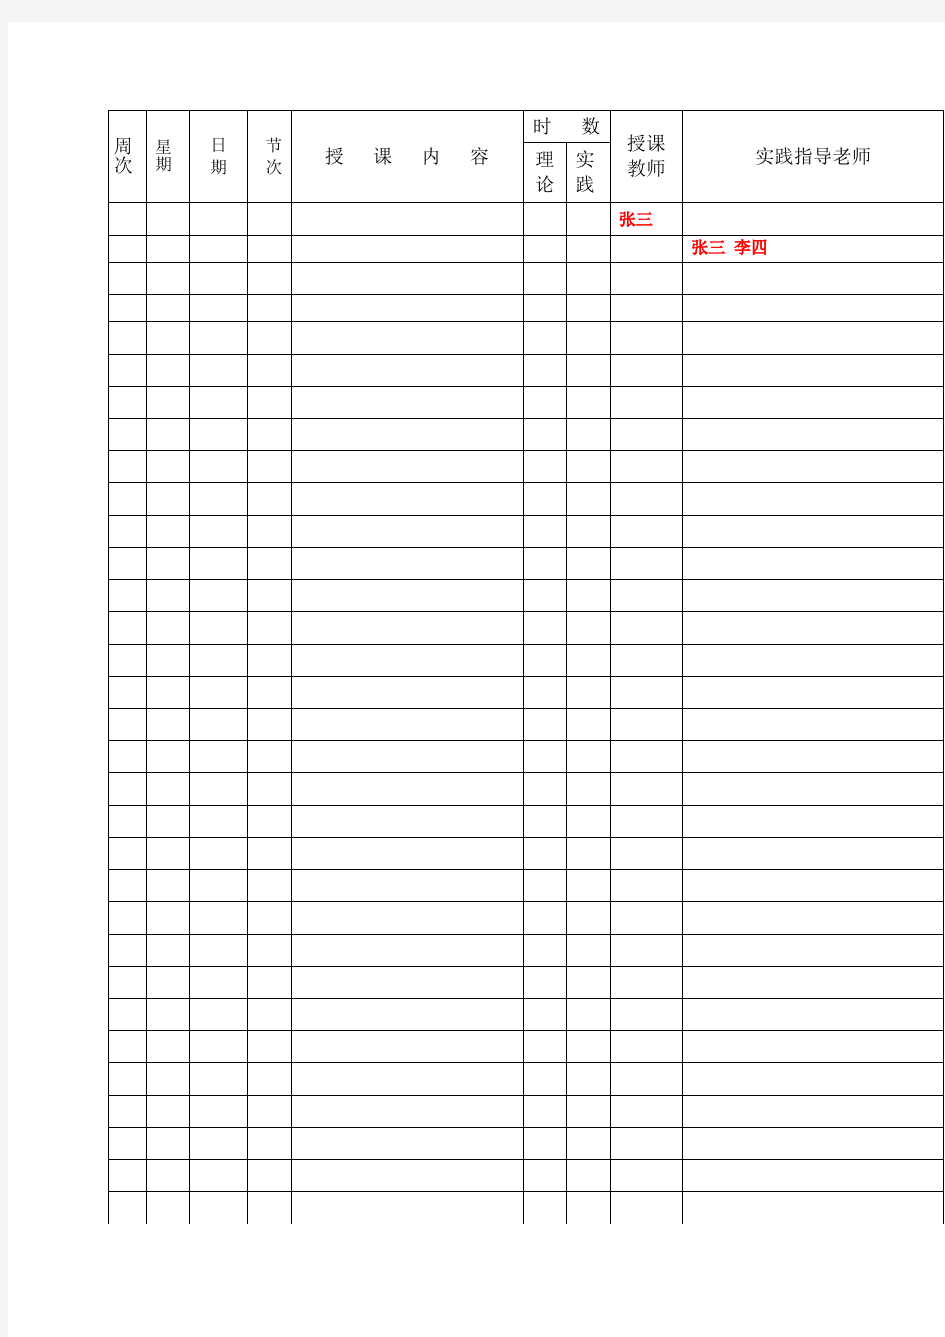 授课计划表空白模板(进度表)